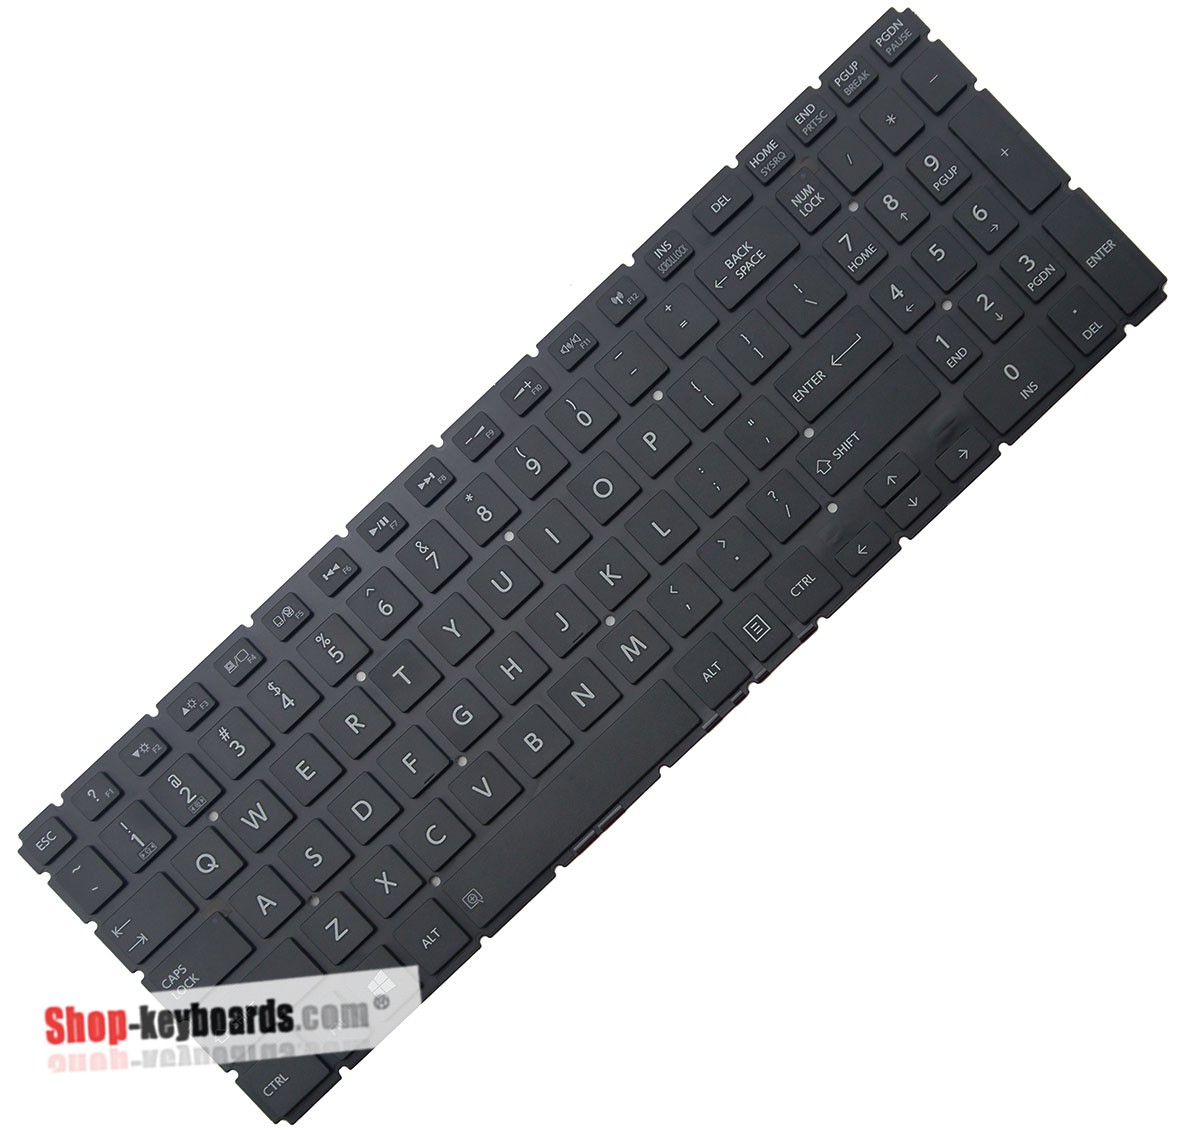 Toshiba SATELLITE C55-C-1G6  Keyboard replacement